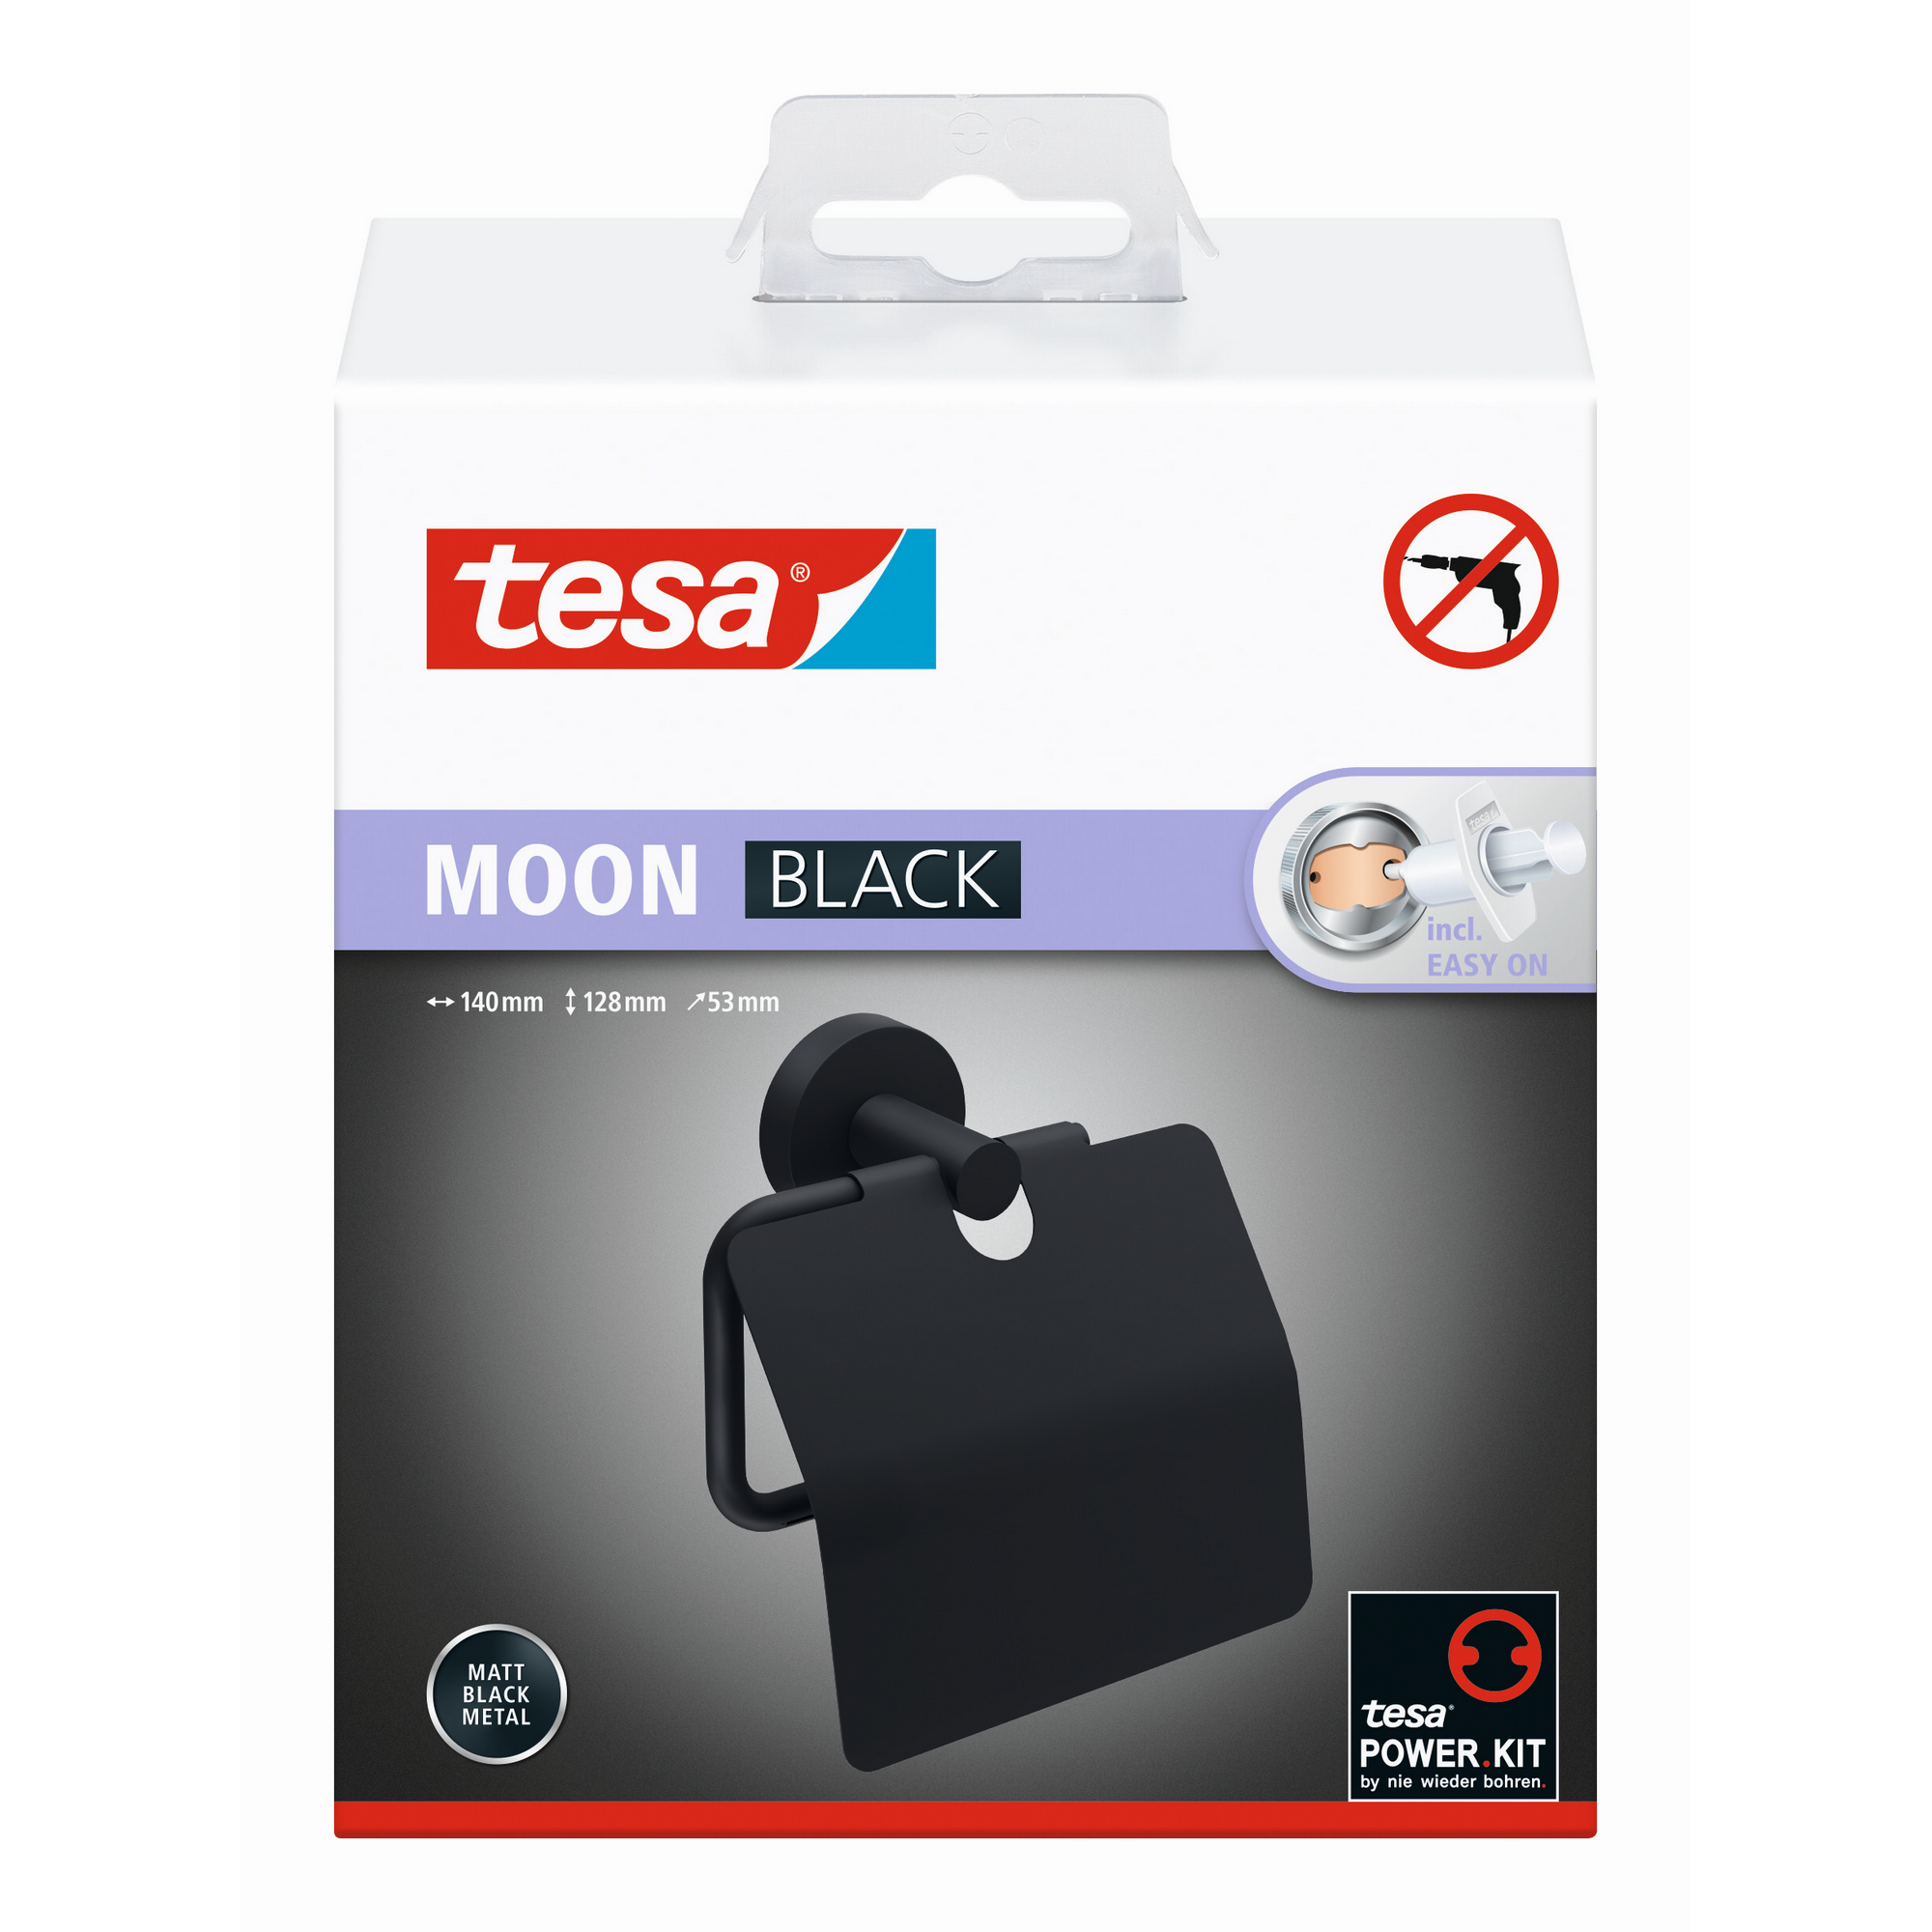 WC-Papierrollenhalter 'Moon Black' matt schwarz mit Deckel und Klebelösung 14 x 12,8 x 5,25 cm + product picture